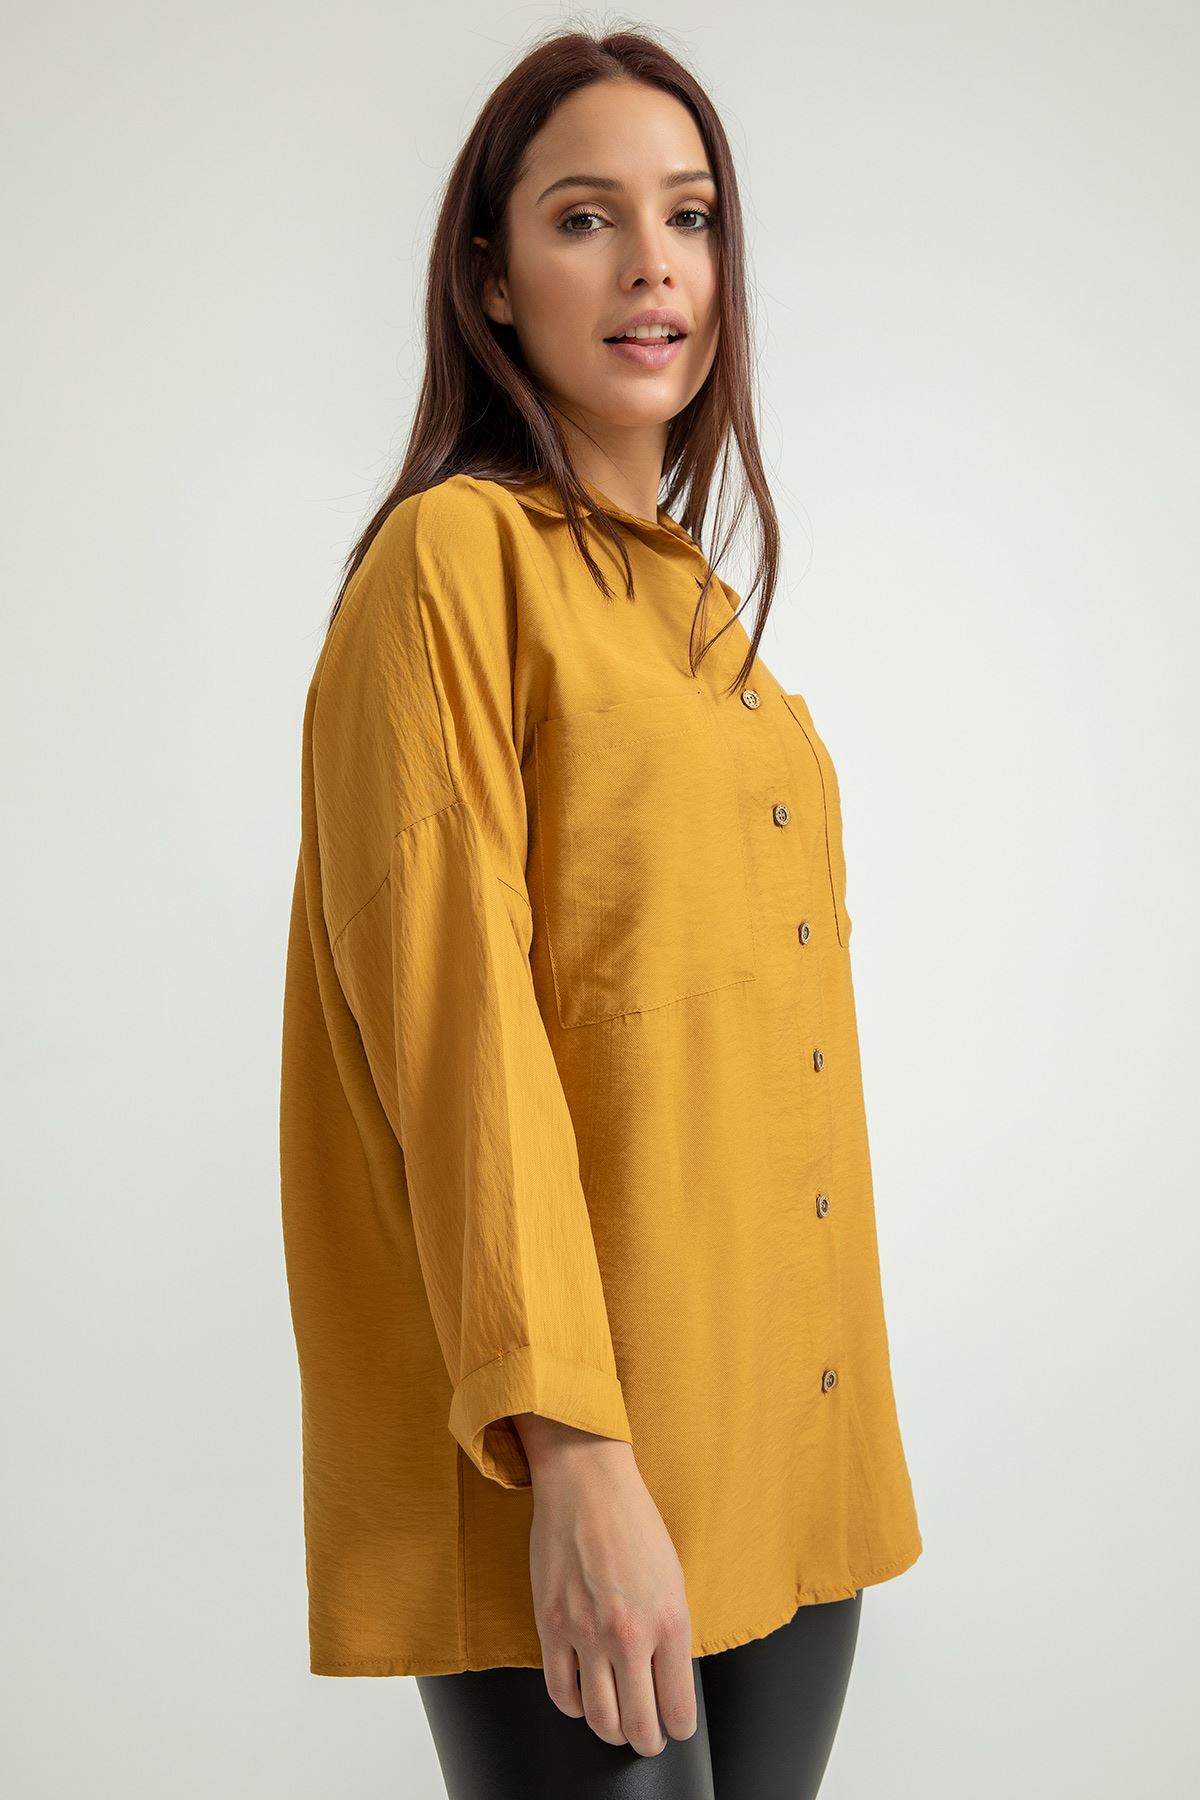 Aerobin Fabric Long Sleeve Shirt Collar Below Hip Oversize Women'S Shirt - Light Brown